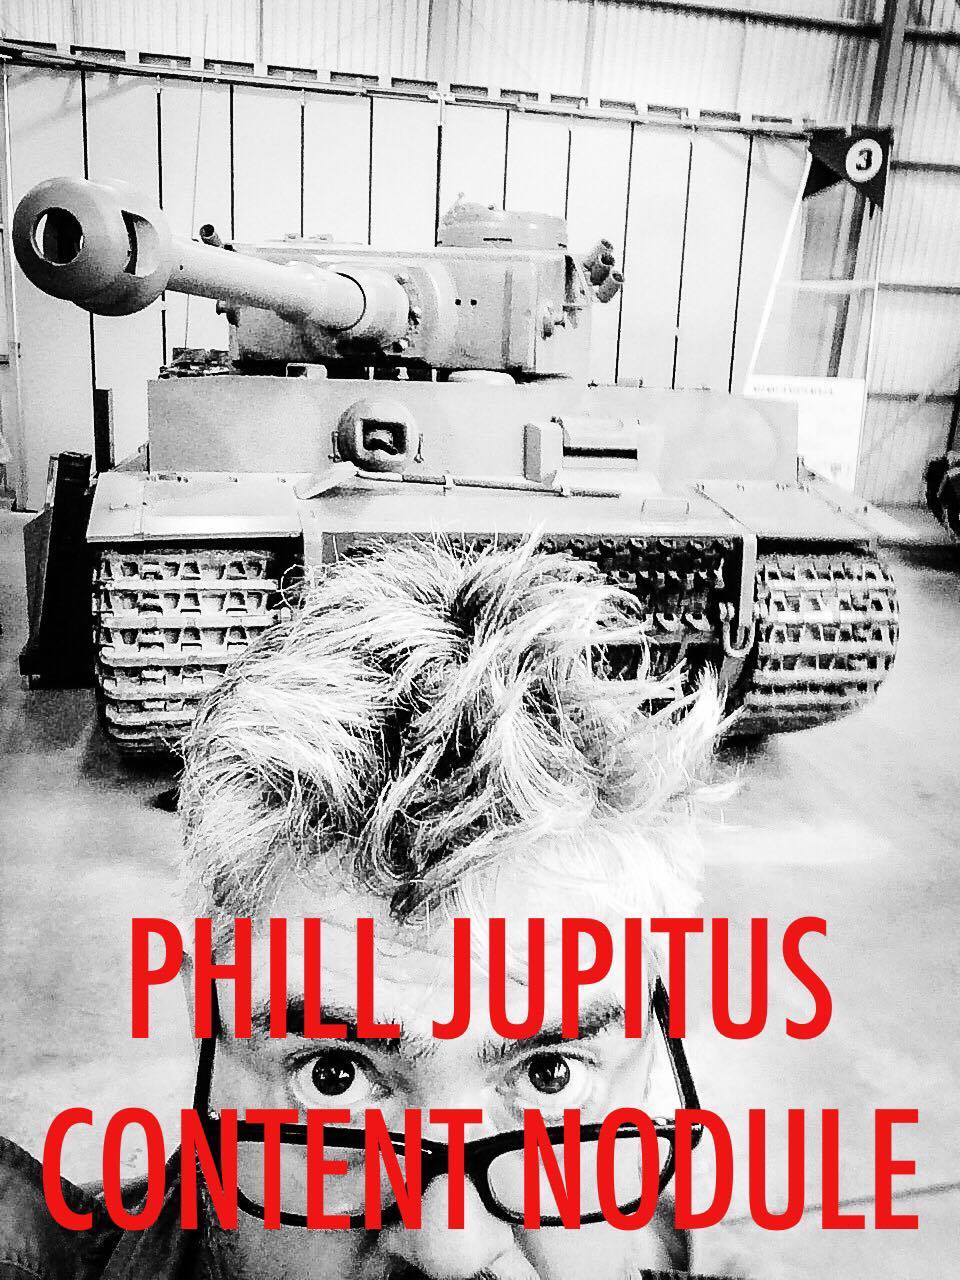 Phill Jupitus Content Nodule - Episode 2